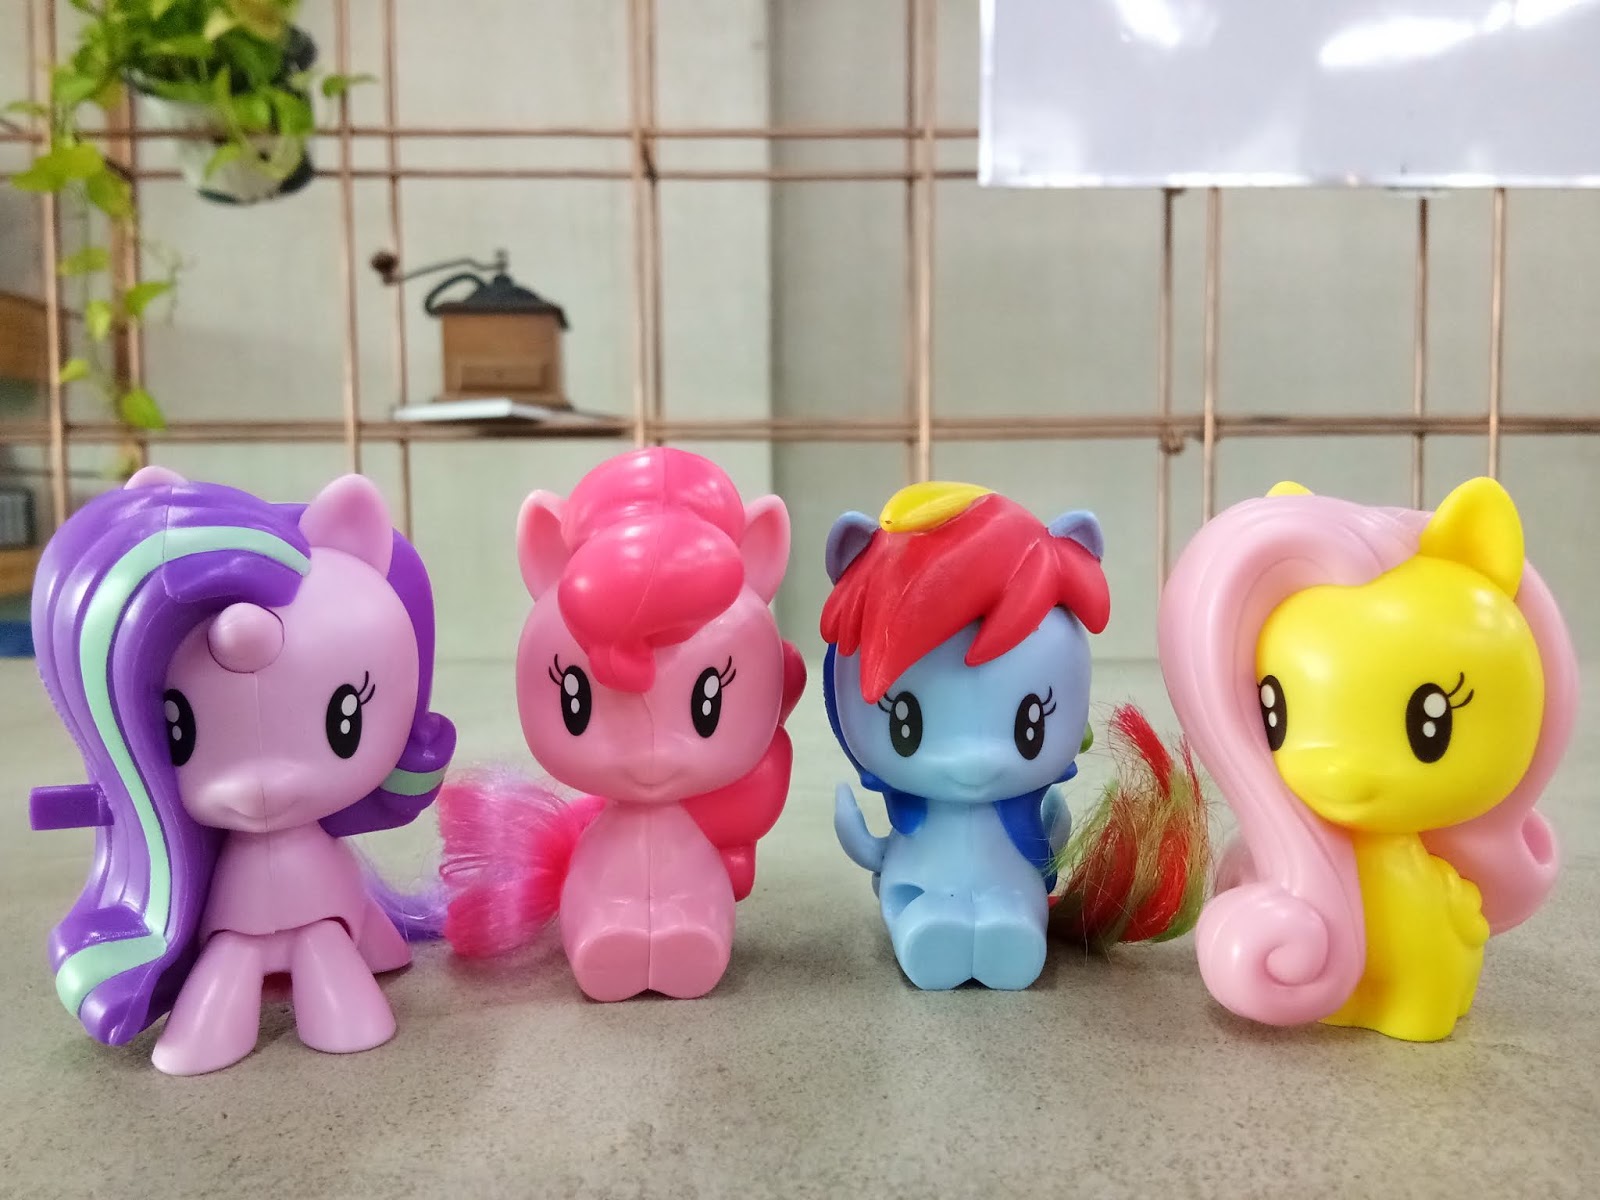 Pony cutie. My little Pony макдональдс. Имена my little Pony cutie Mark Crew. Фигурки cutie Mark Crew my little Pony. My little Pony MCDONALDS 2019.